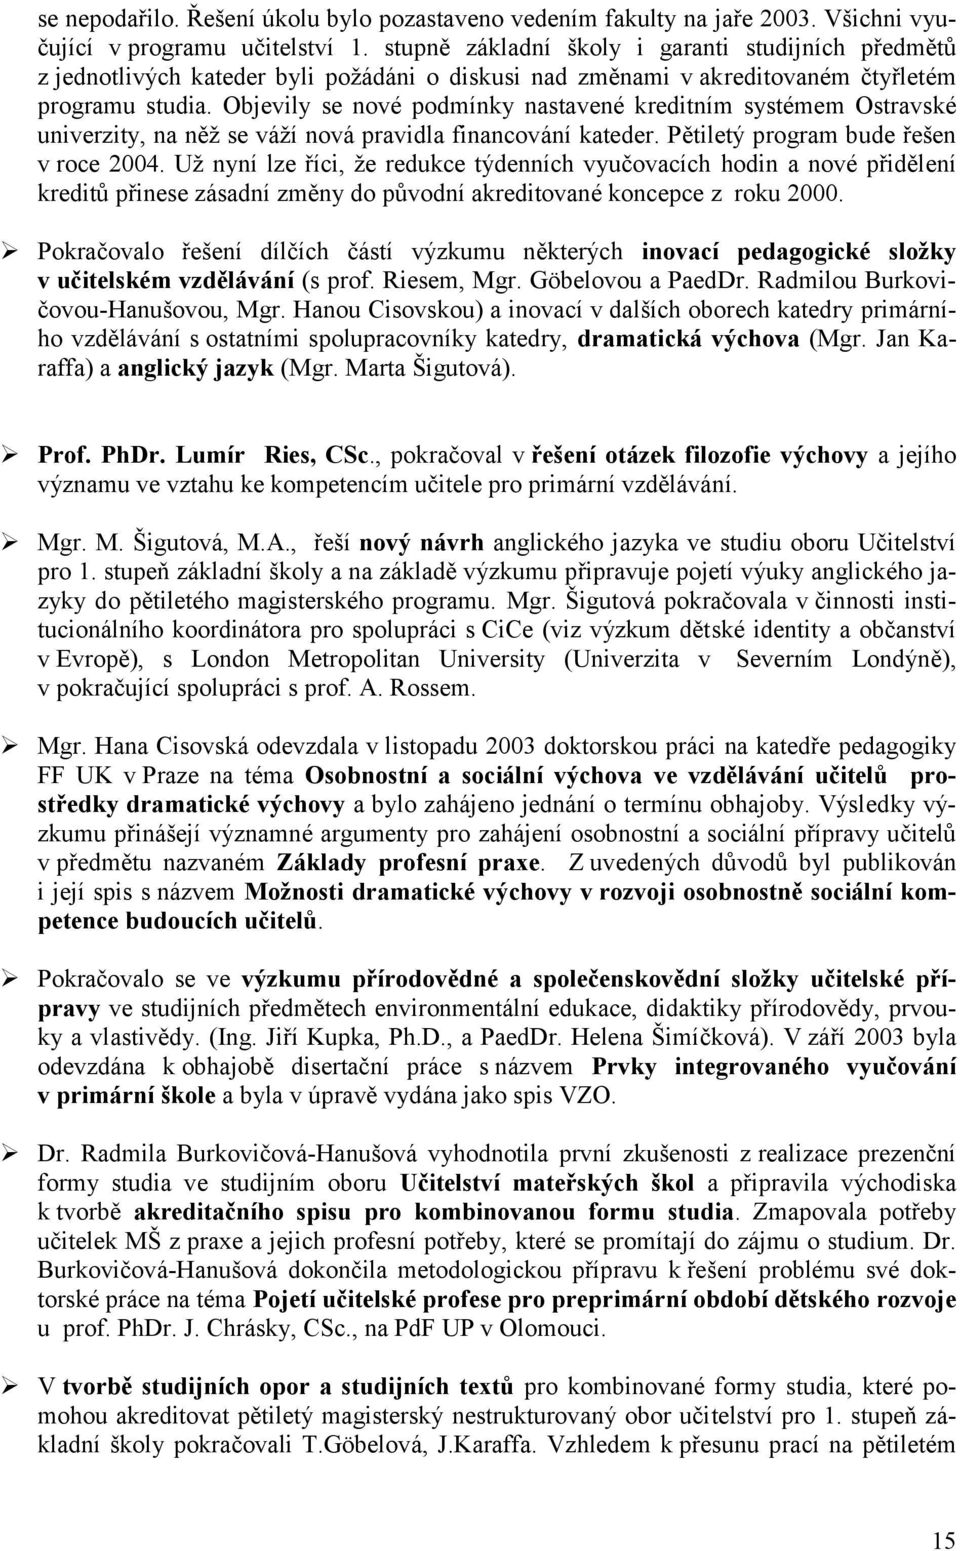 Objevily se nové podmínky nastavené kreditním systémem Ostravské univerzity, na něž se váží nová pravidla financování kateder. Pětiletý program bude řešen v roce 2004.